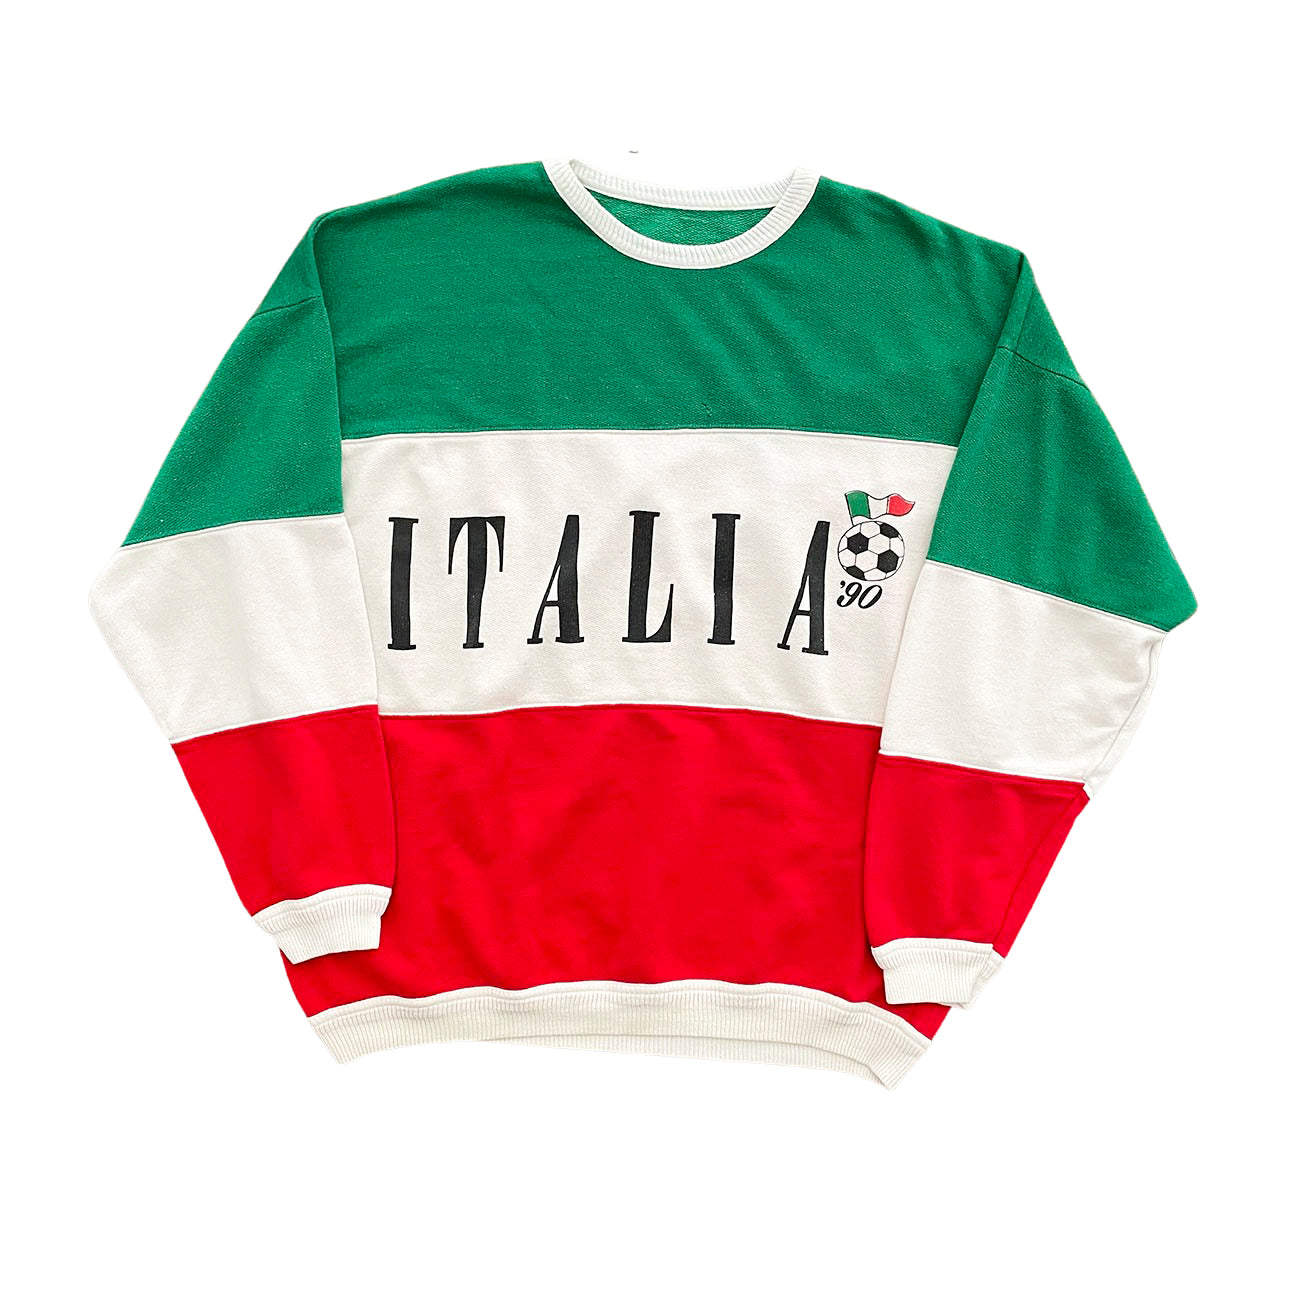 Italia 90 Tri-Color Sweater - L